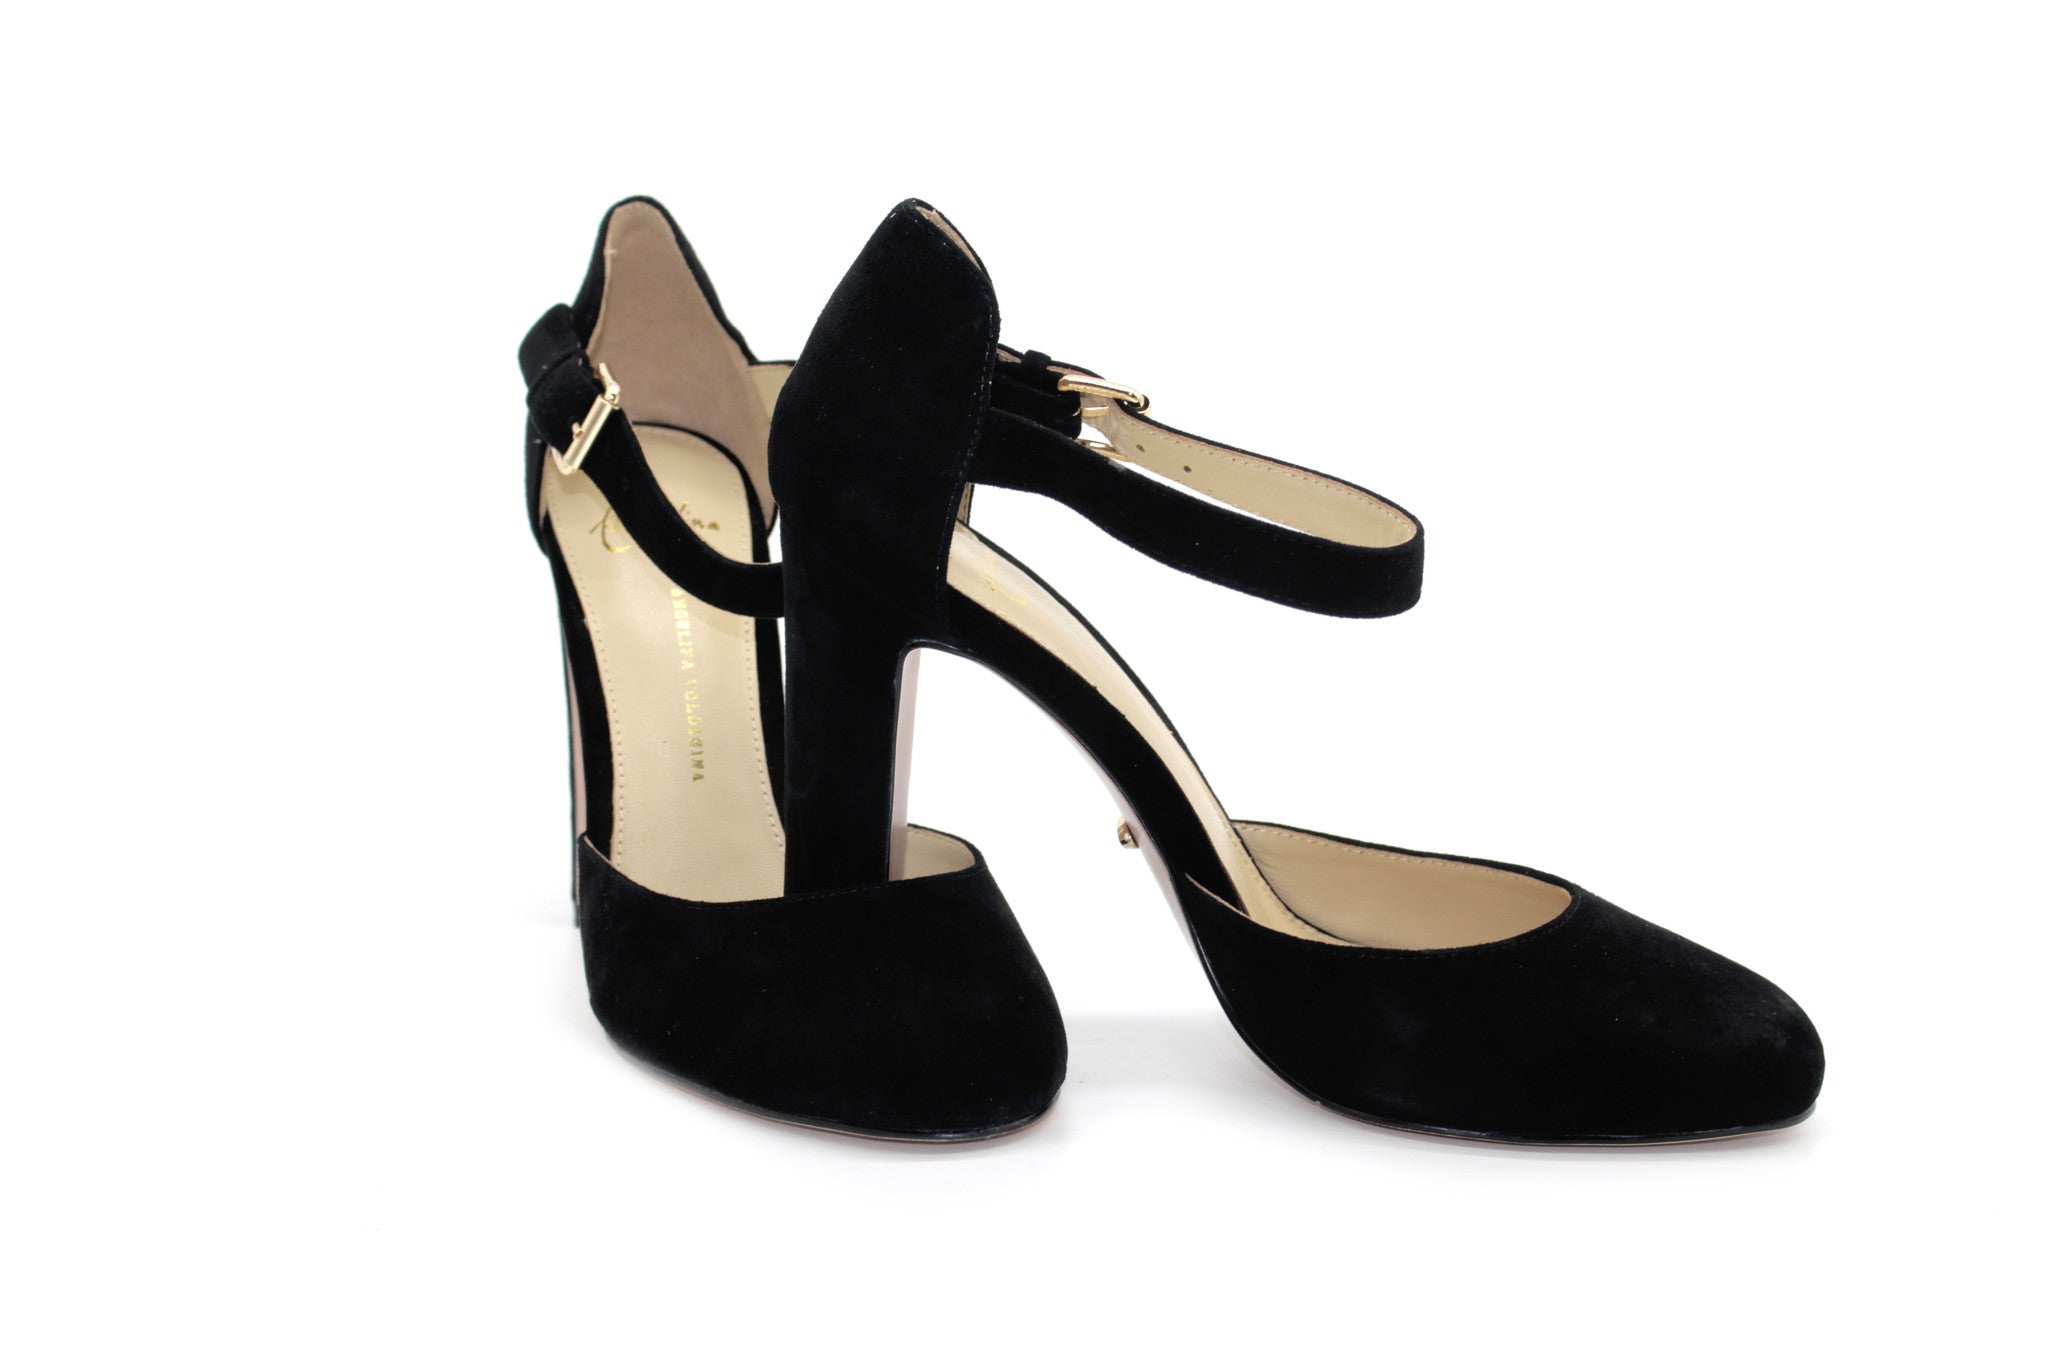 Heels Black: Black Heels Vintage